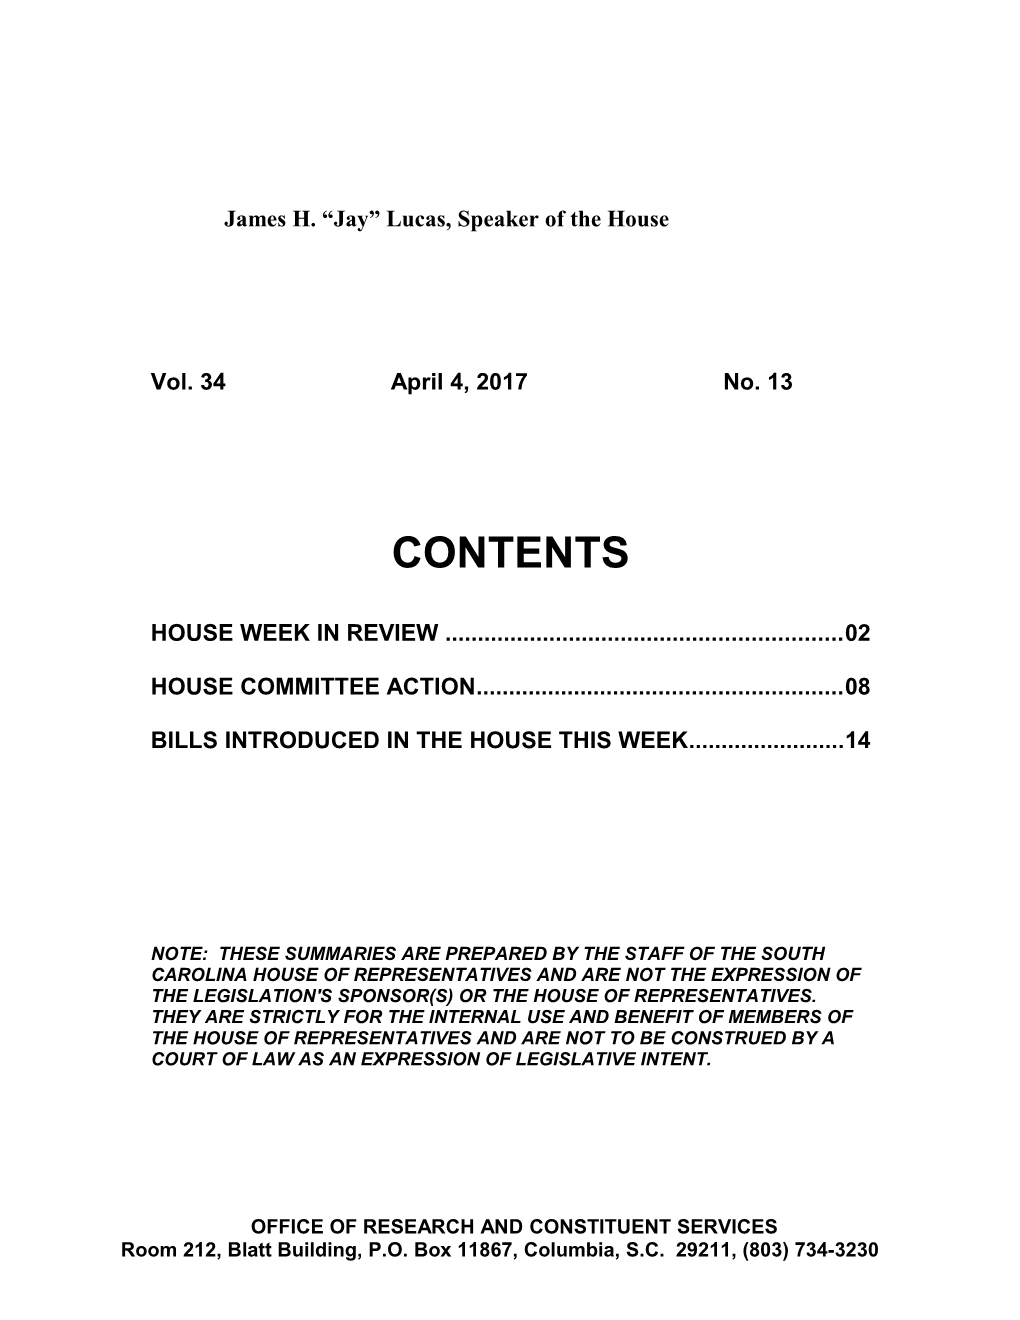 Legislative Update - Vol. 34 No. 13 April 4, 2017 - South Carolina Legislature Online